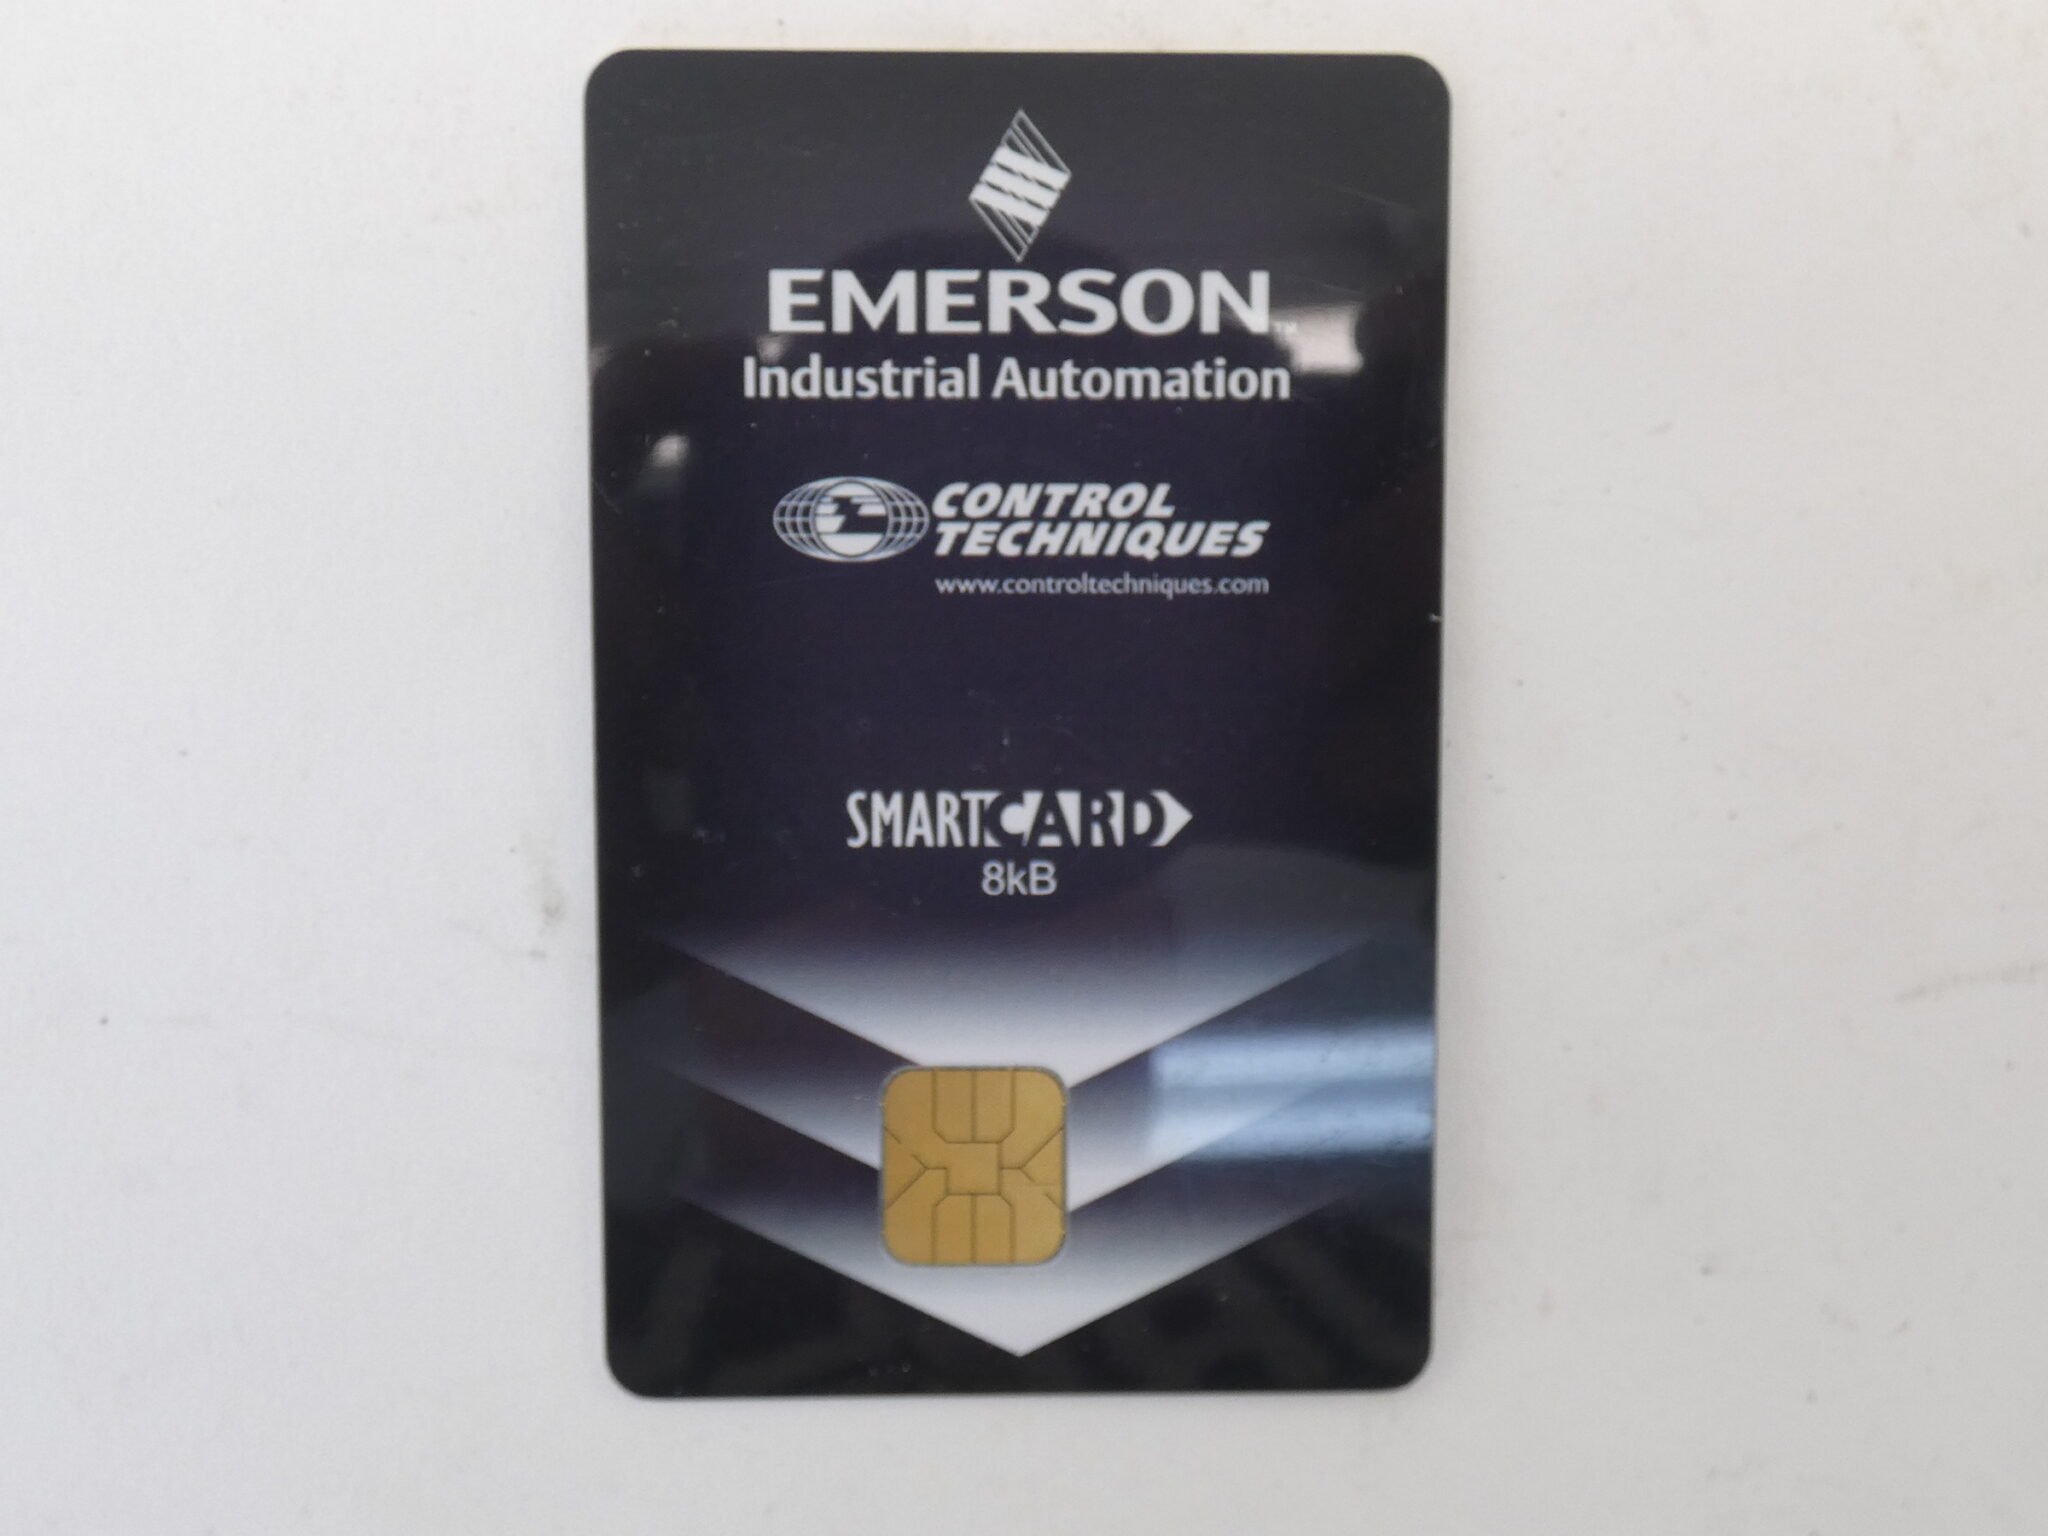 Emerson 2214-4246-03 Smart Card 8kB Control Techniques - NEW Surplus!